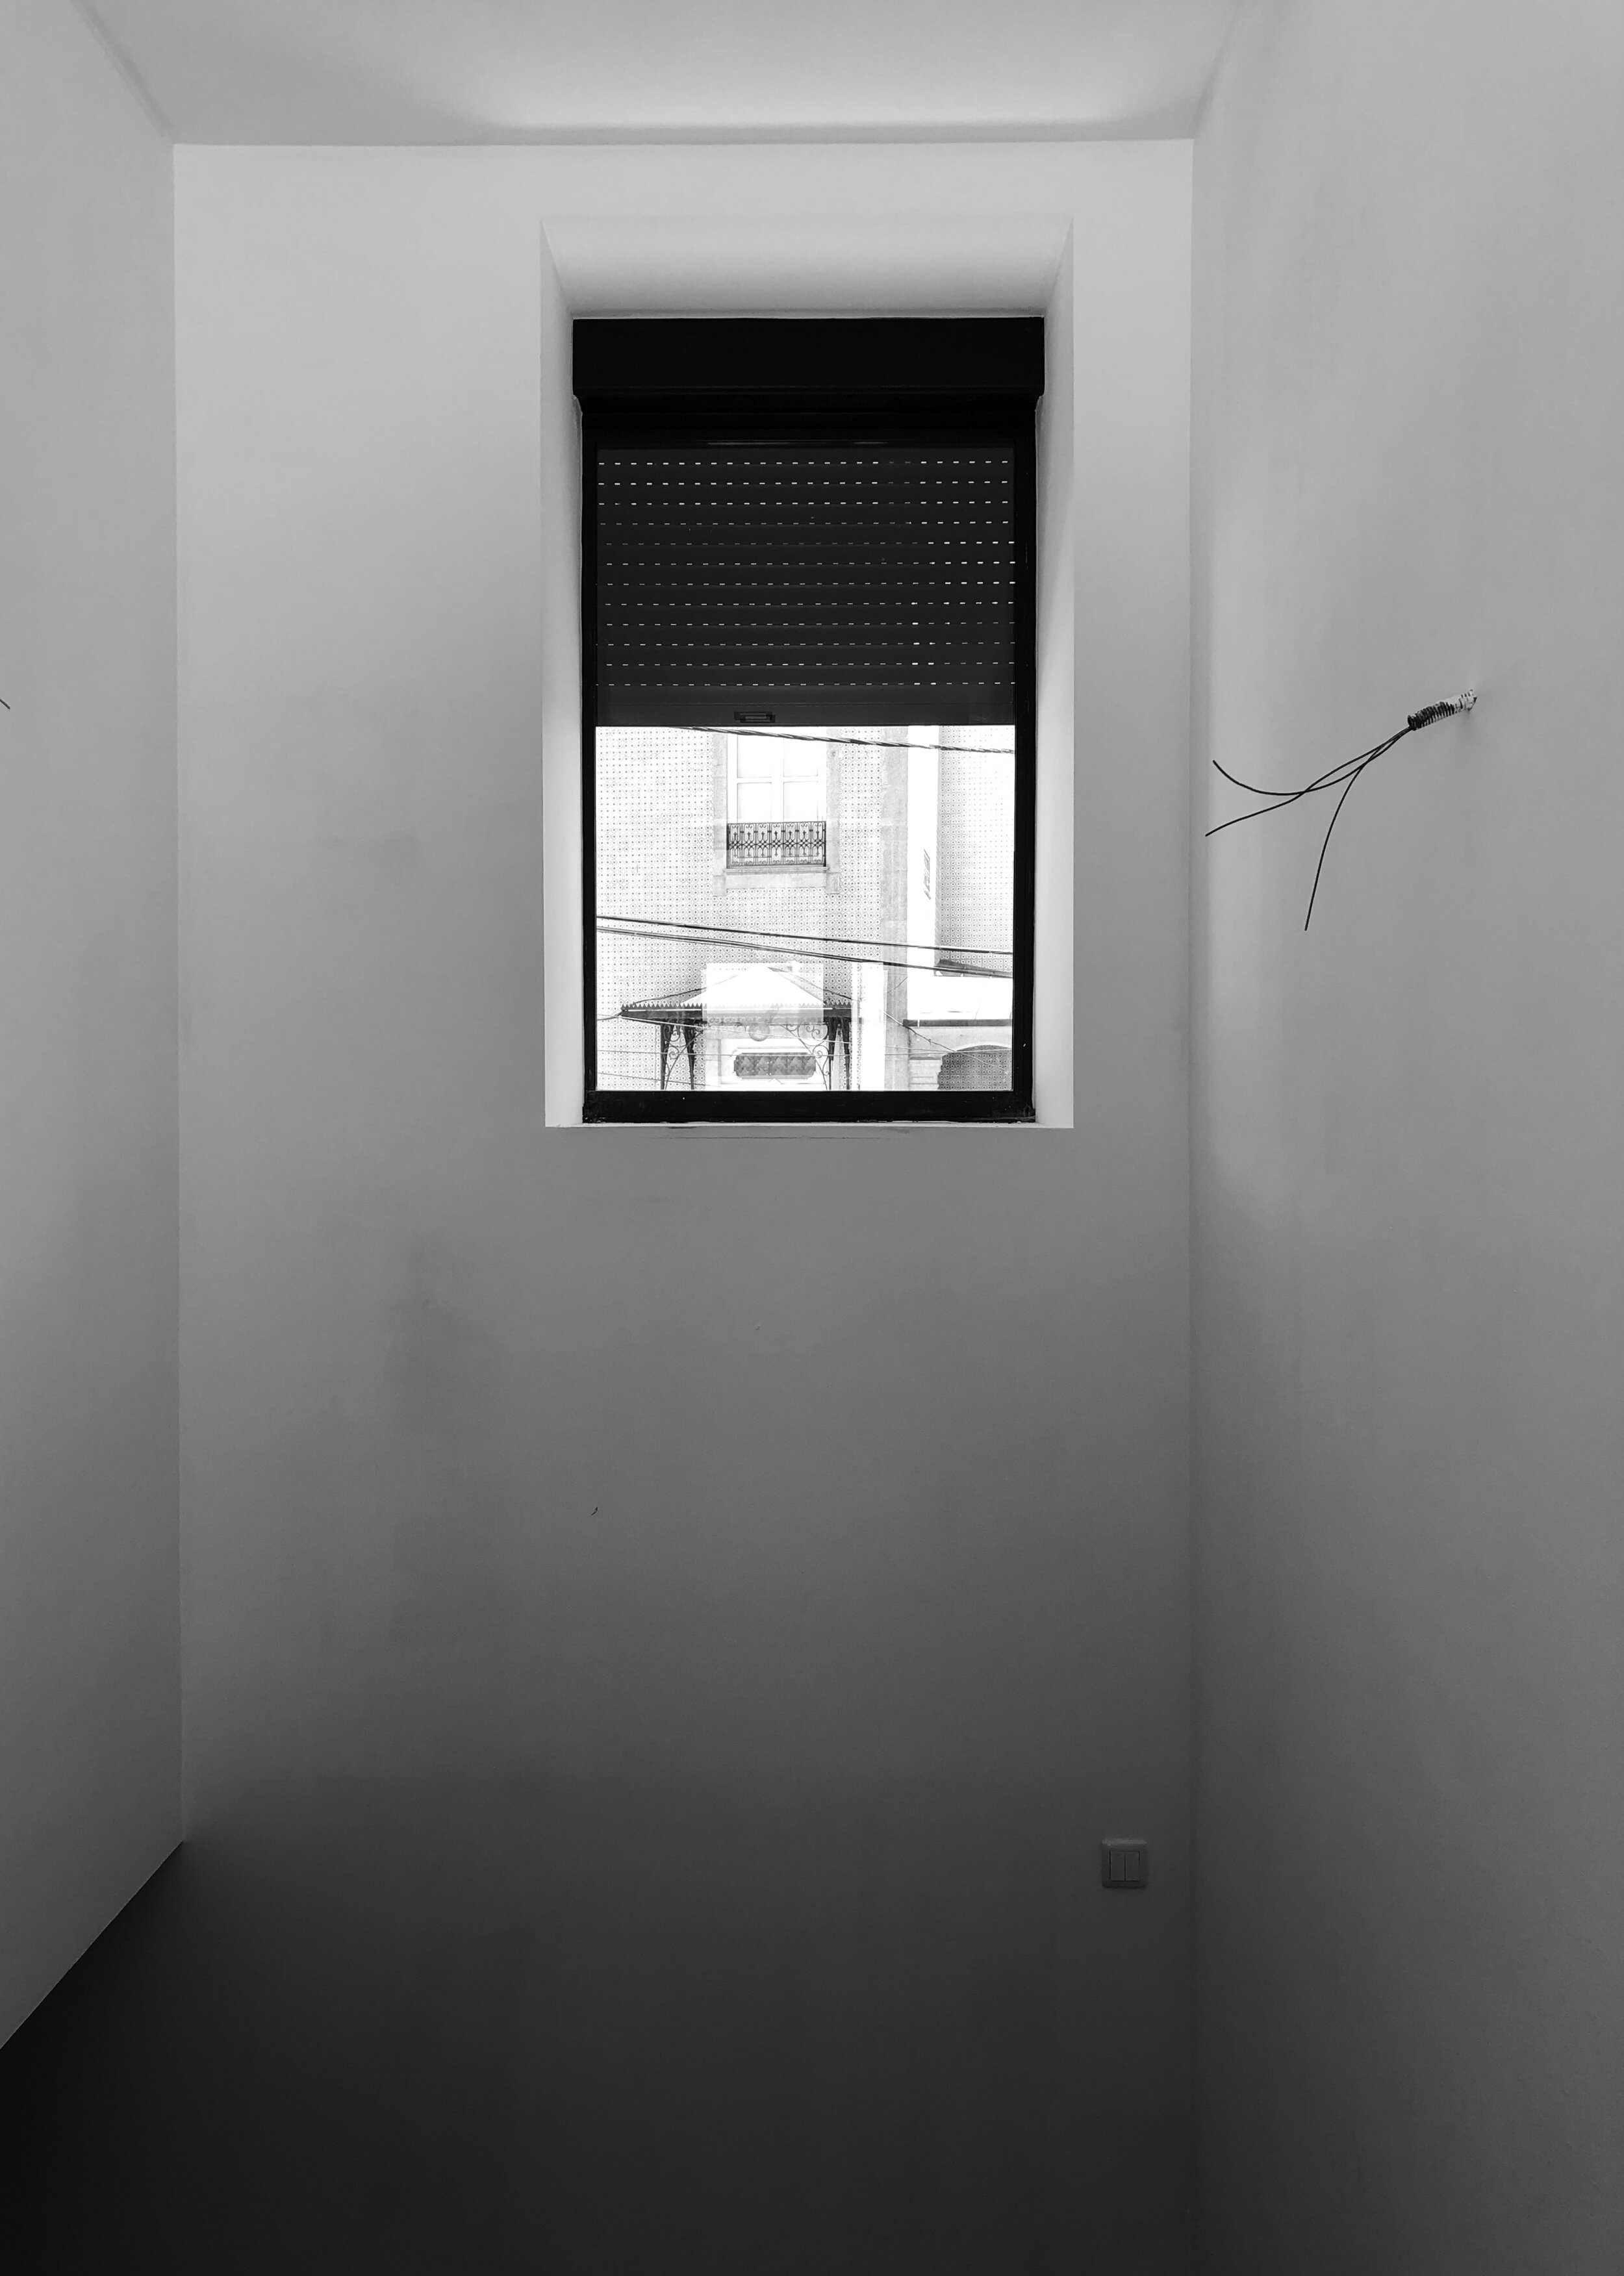 Moradia Coelhosa - eva atelier - evolutionary acrchitecture - vale de cambra - remodelação - arquitectura (4).jpg